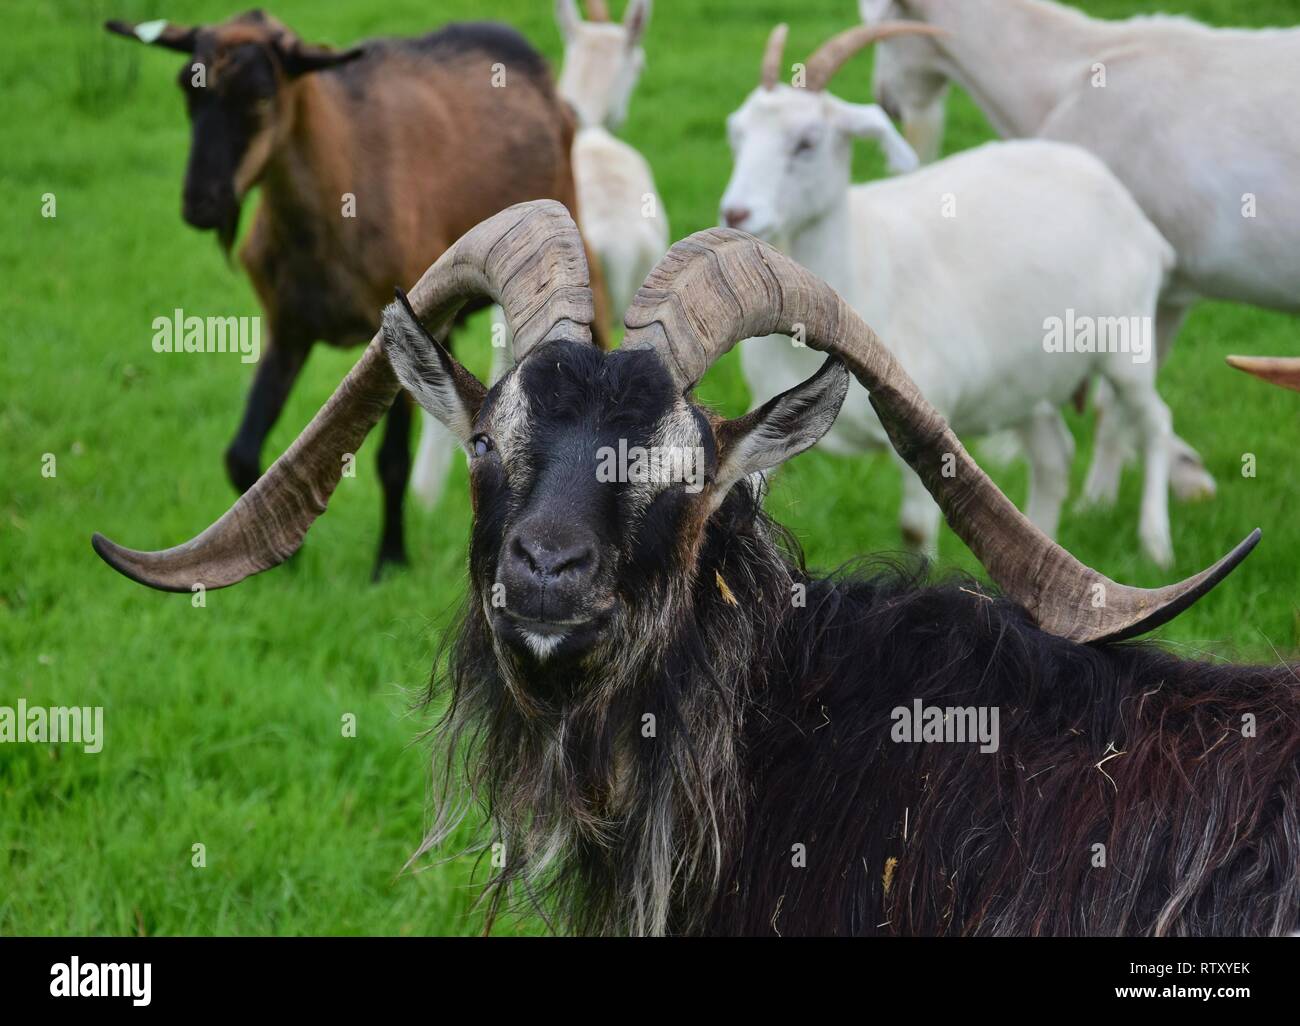 Ritratto di un imponente maschio di capra, cieca da un occhio, con lunghe corna e lungo cappotto. Altri caprini in background. Foto Stock